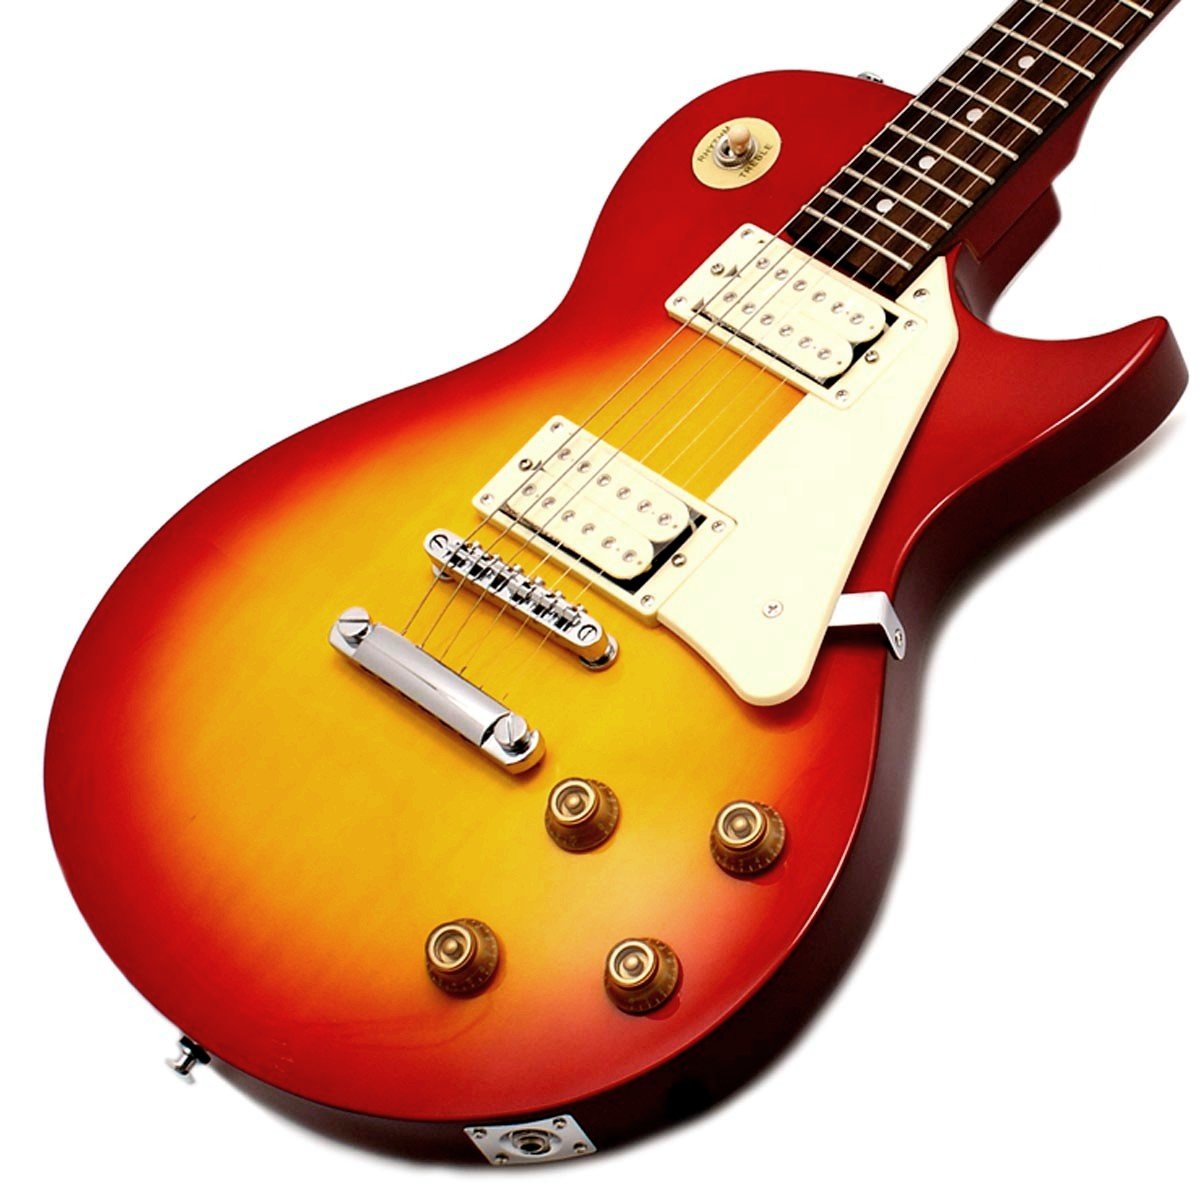 encore-p29sb-les-paul-style-electric-guitar-cherry-sunburst-incl.-bag-lead-strap-dvd-1147-p.jpg